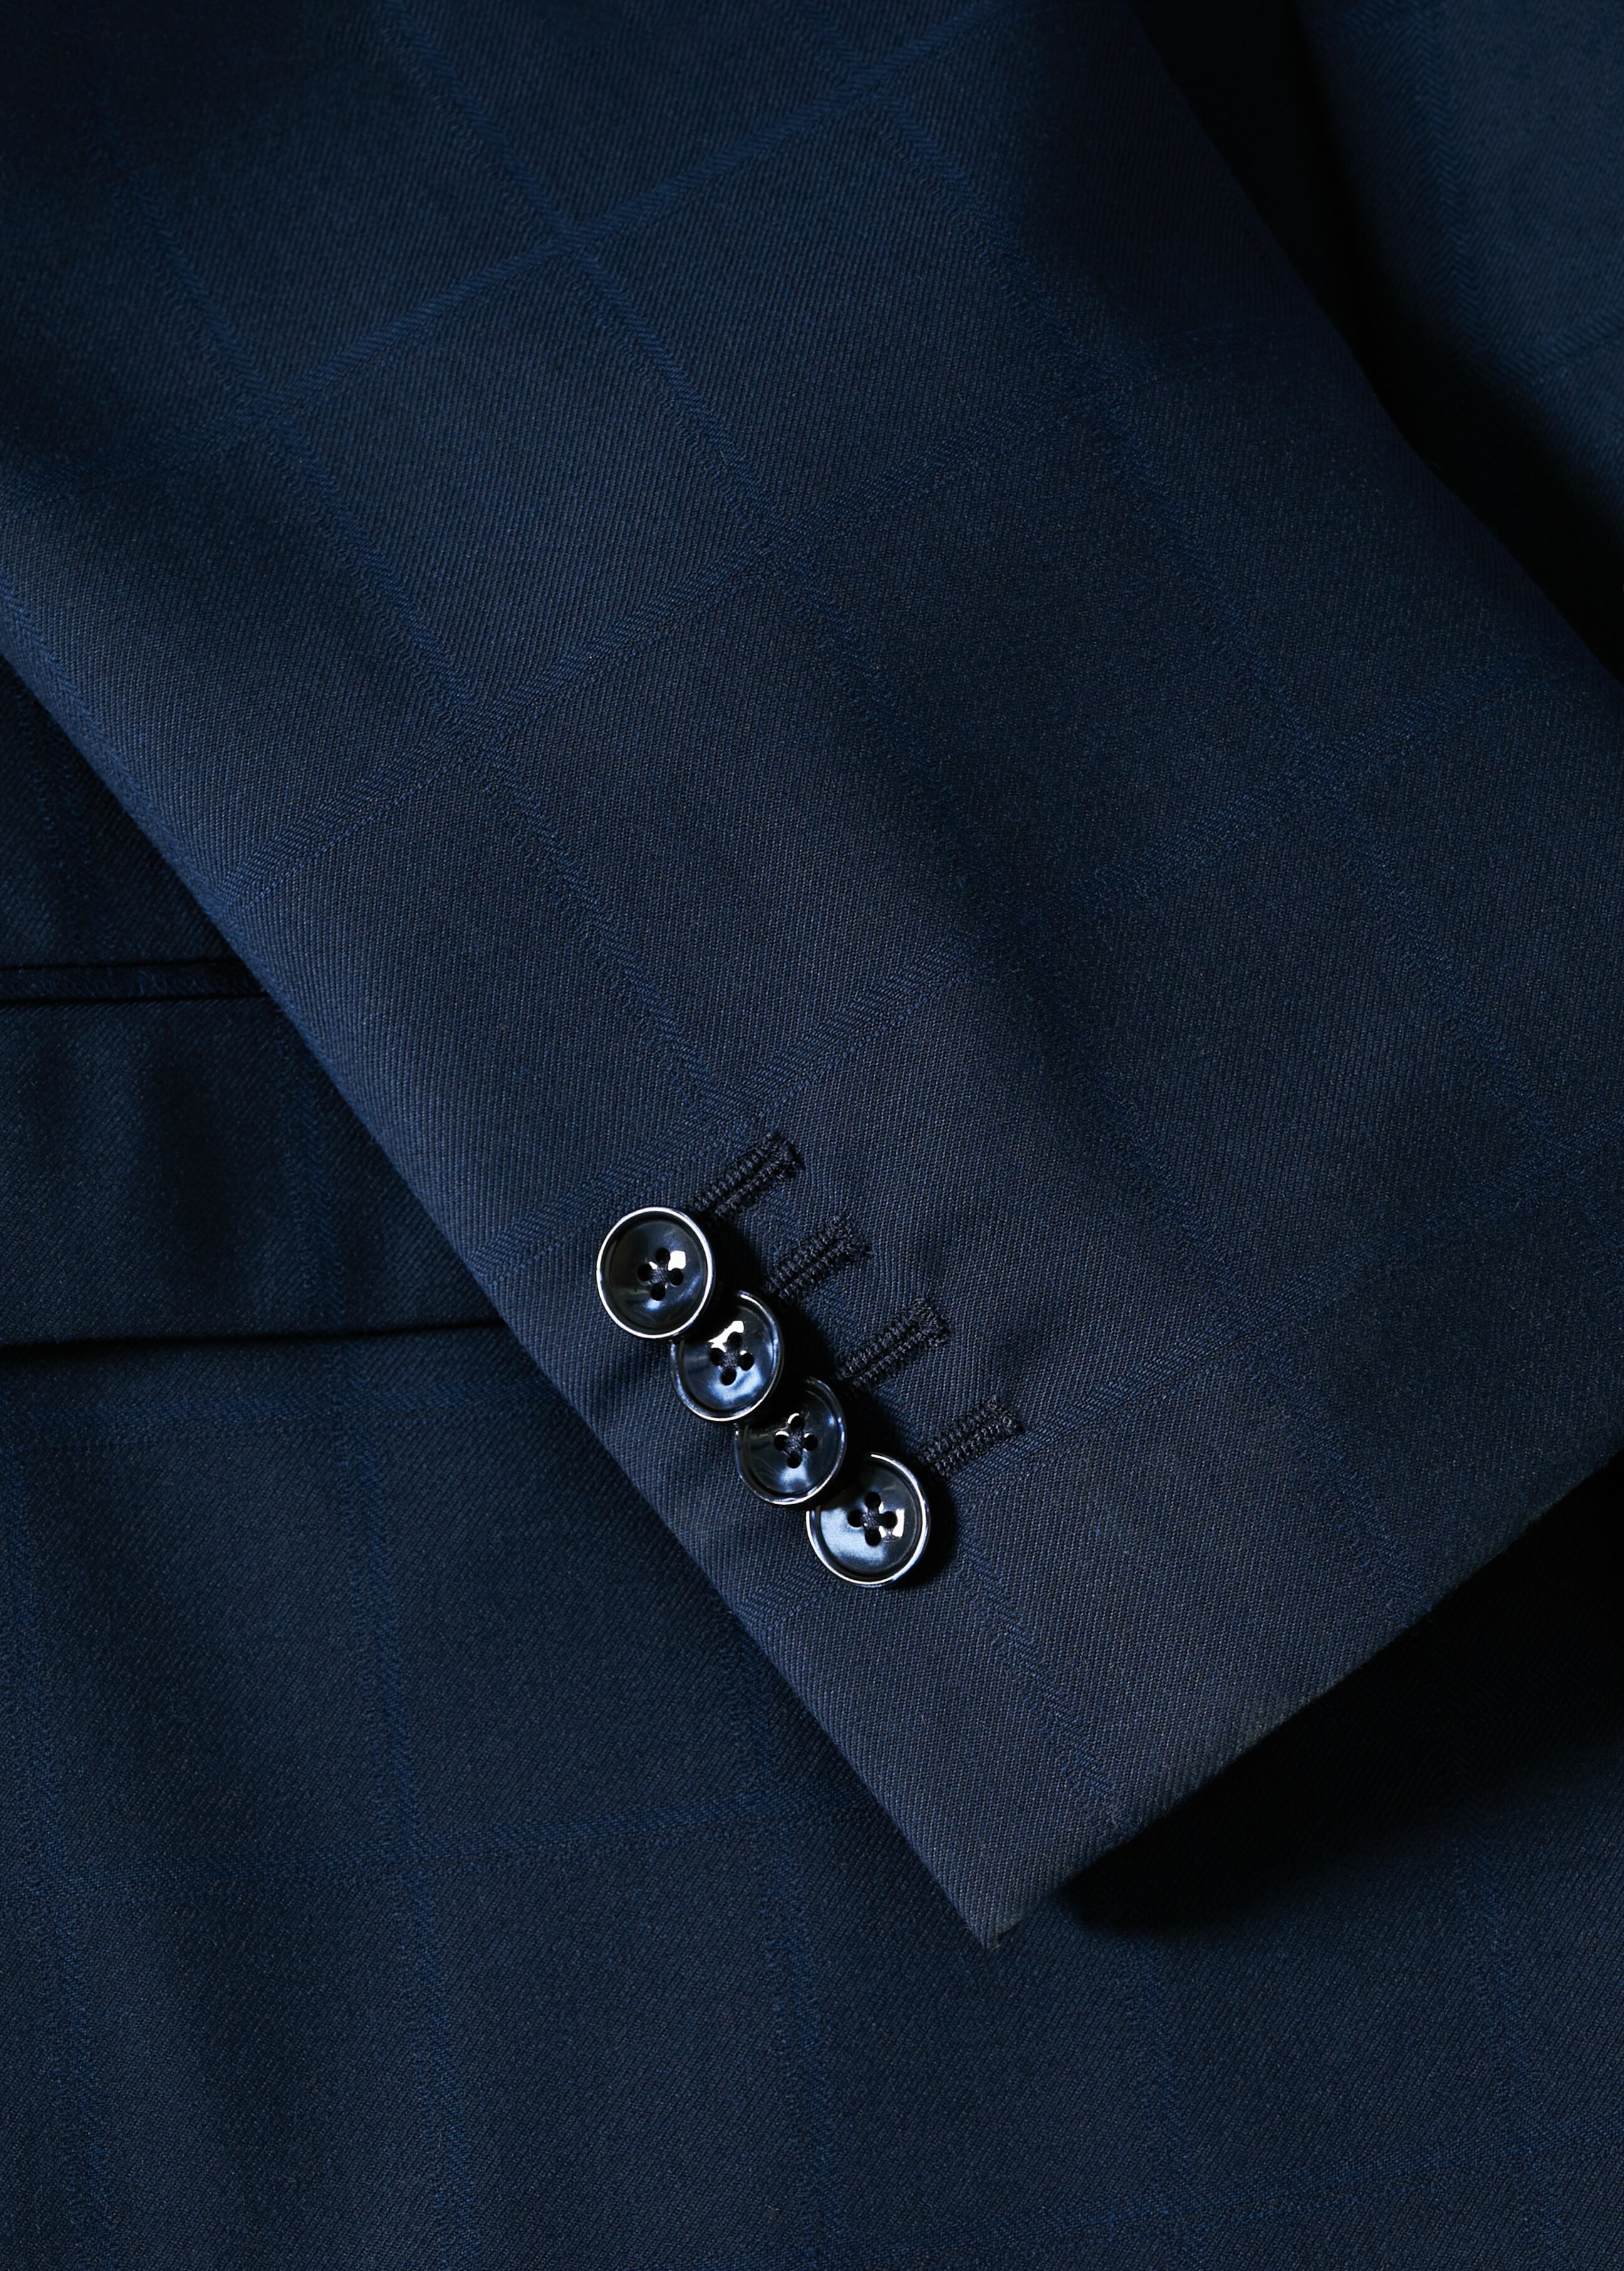 Super slim-fit suit blazer - Details of the article 7